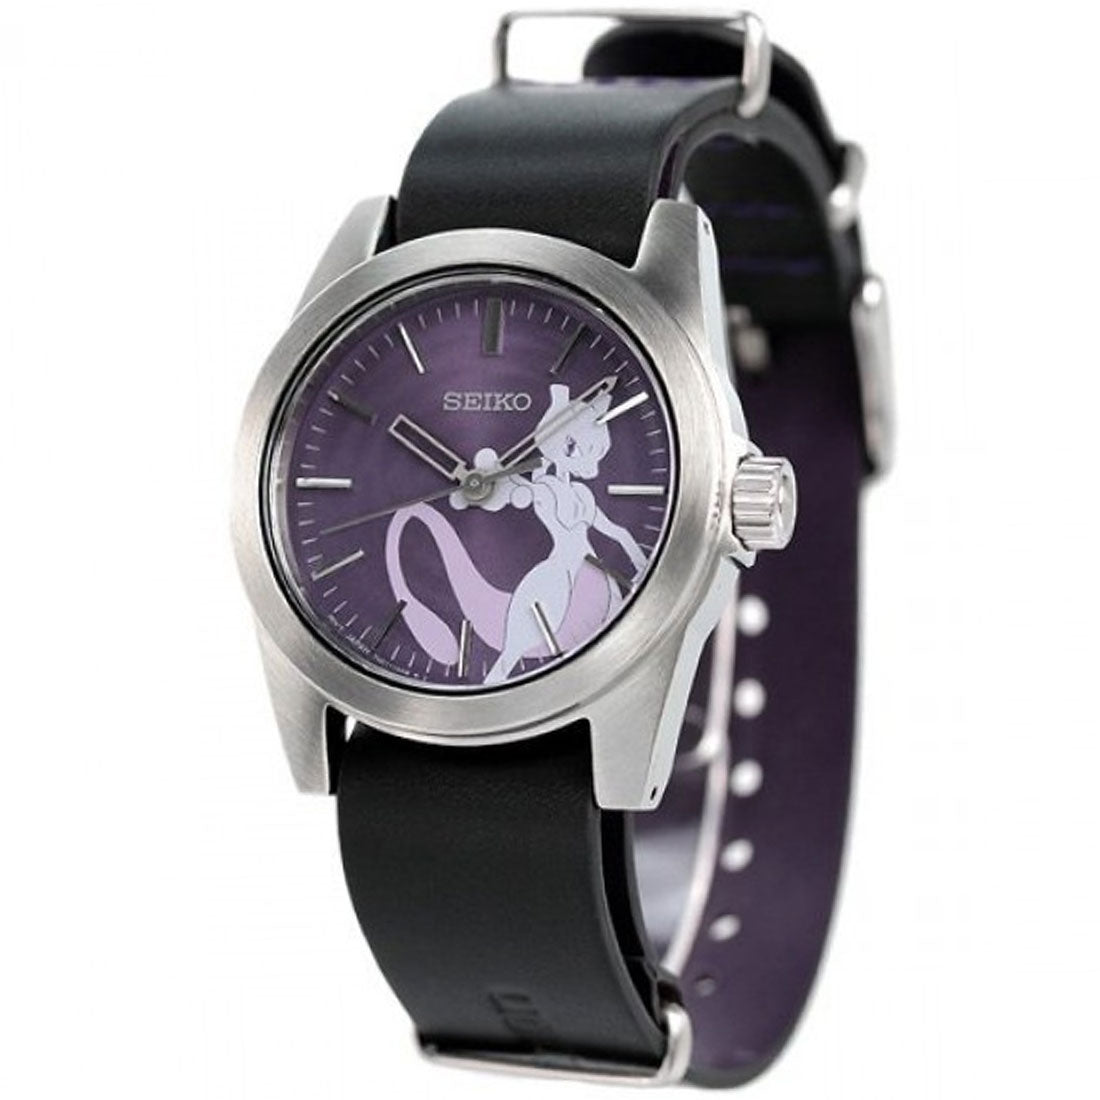 Seiko JDM SCXP181 Mewtwo Pokemon Limited Edition Leather Watch -Seiko